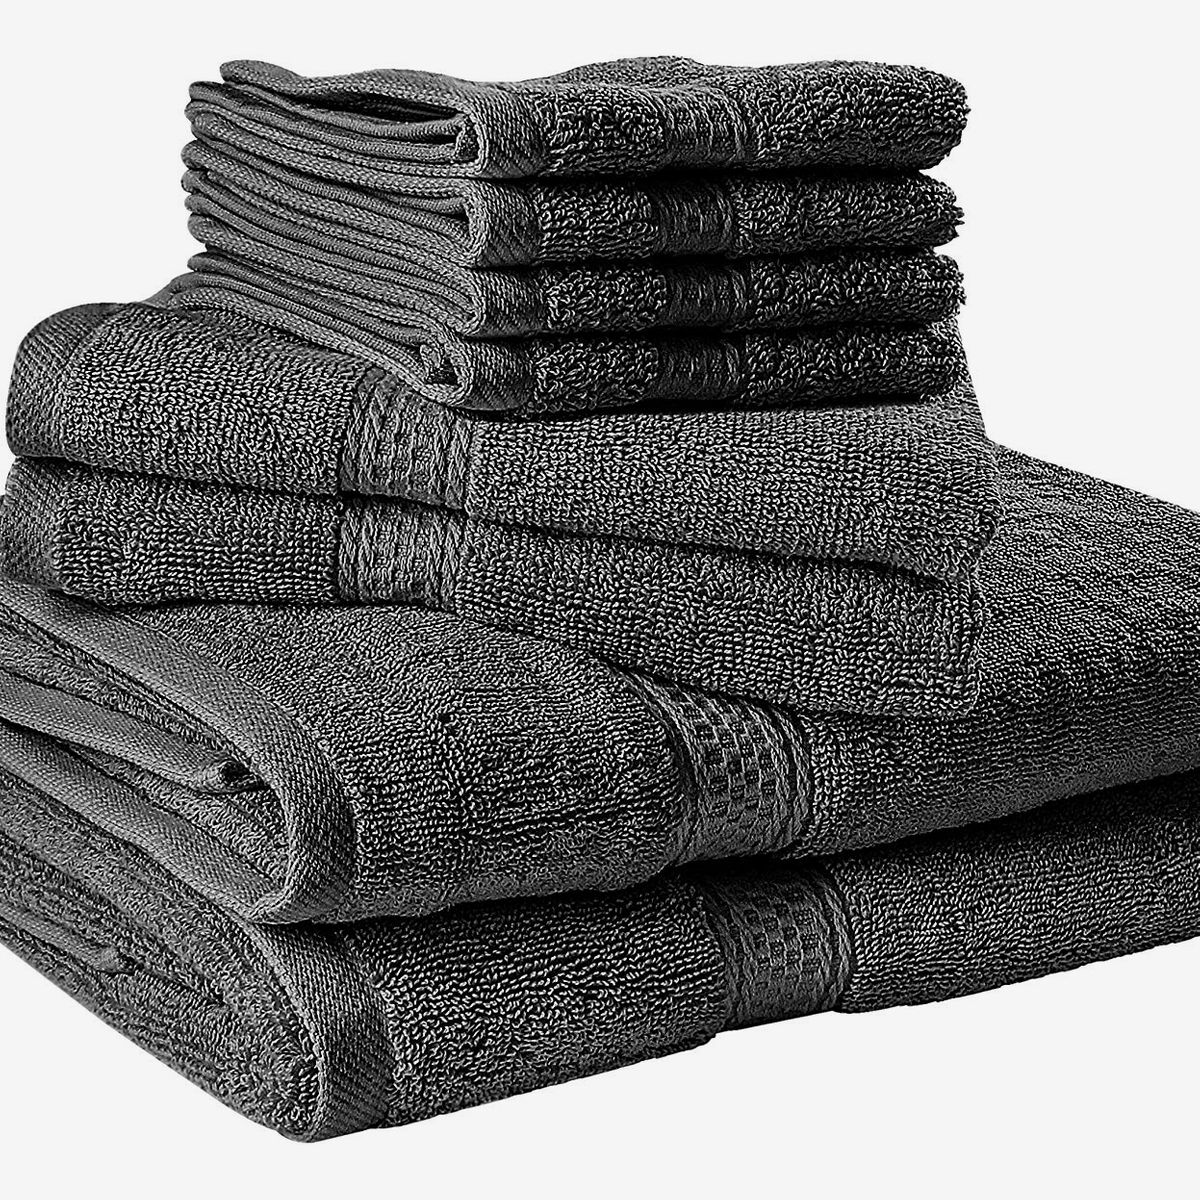 Garnier-Thiebaut Towel Plush Luxury Soft White Towels Set 6-Pieces 2 Bath Towels, 2 Hand Towels, 2 face Cloth